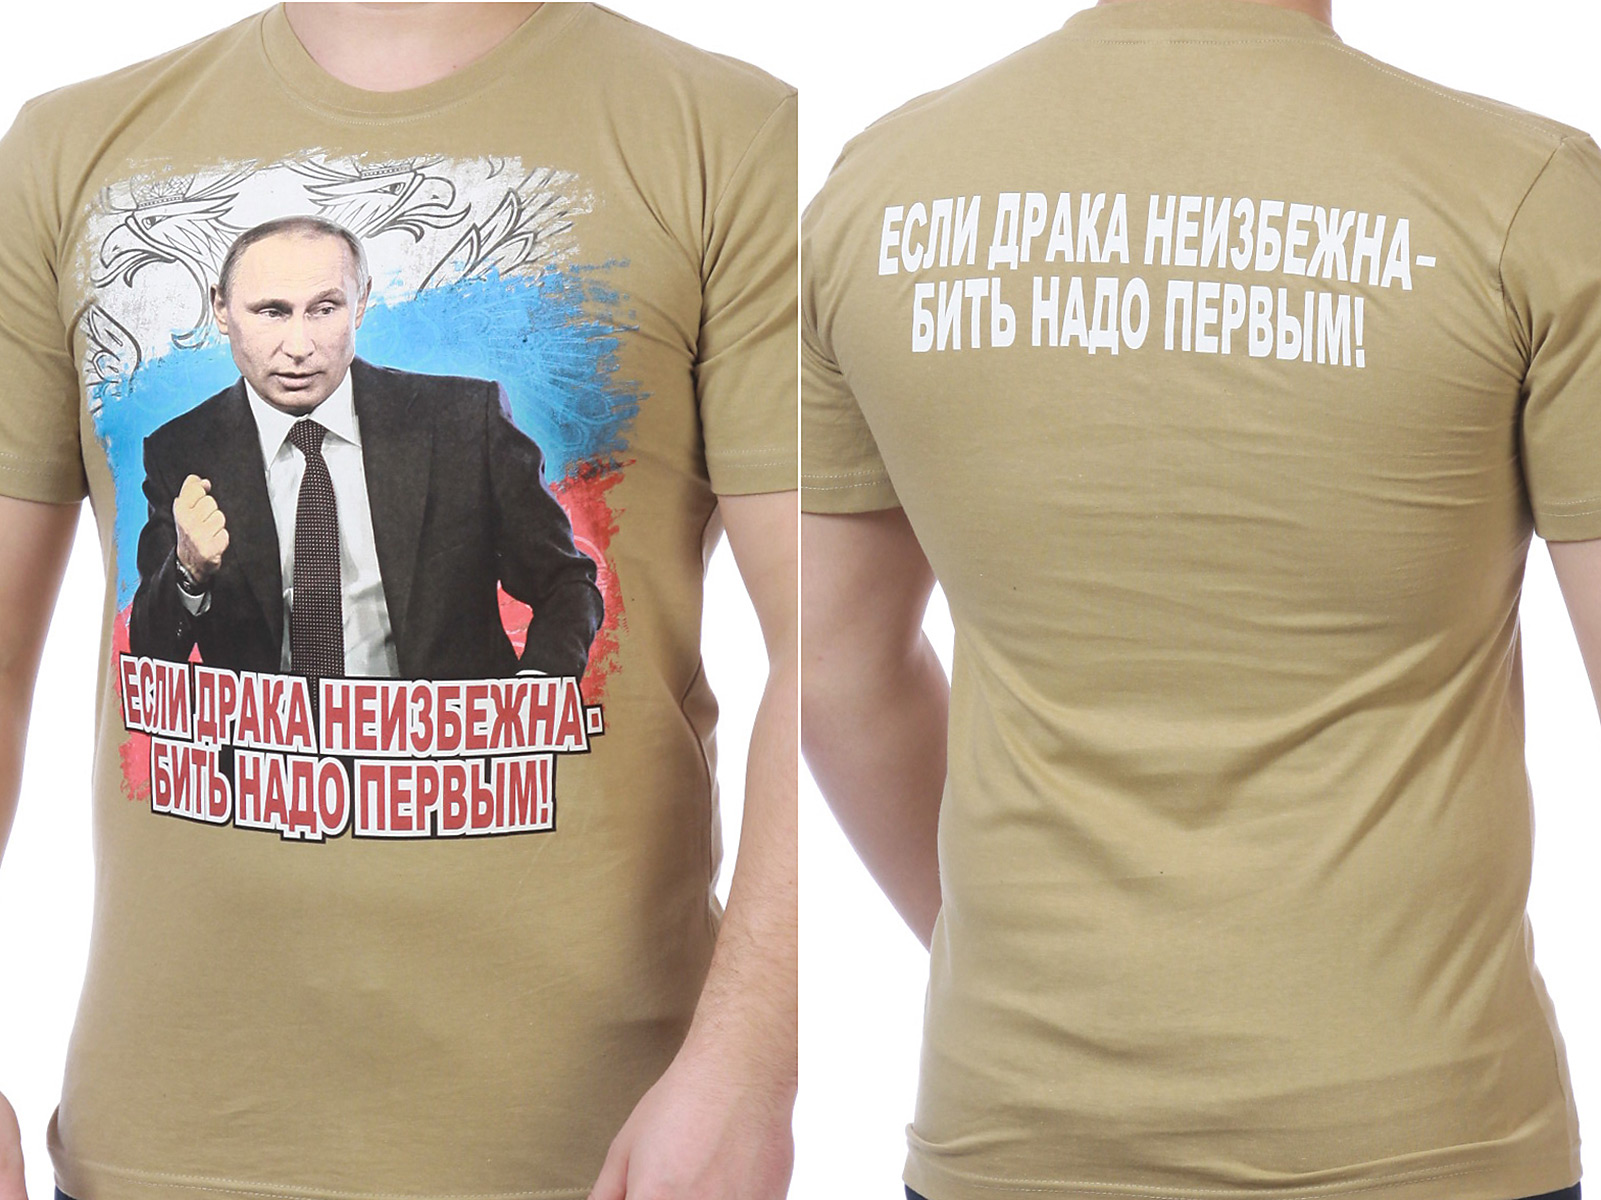 Купить футболку "Путин сказал надо бить первым"